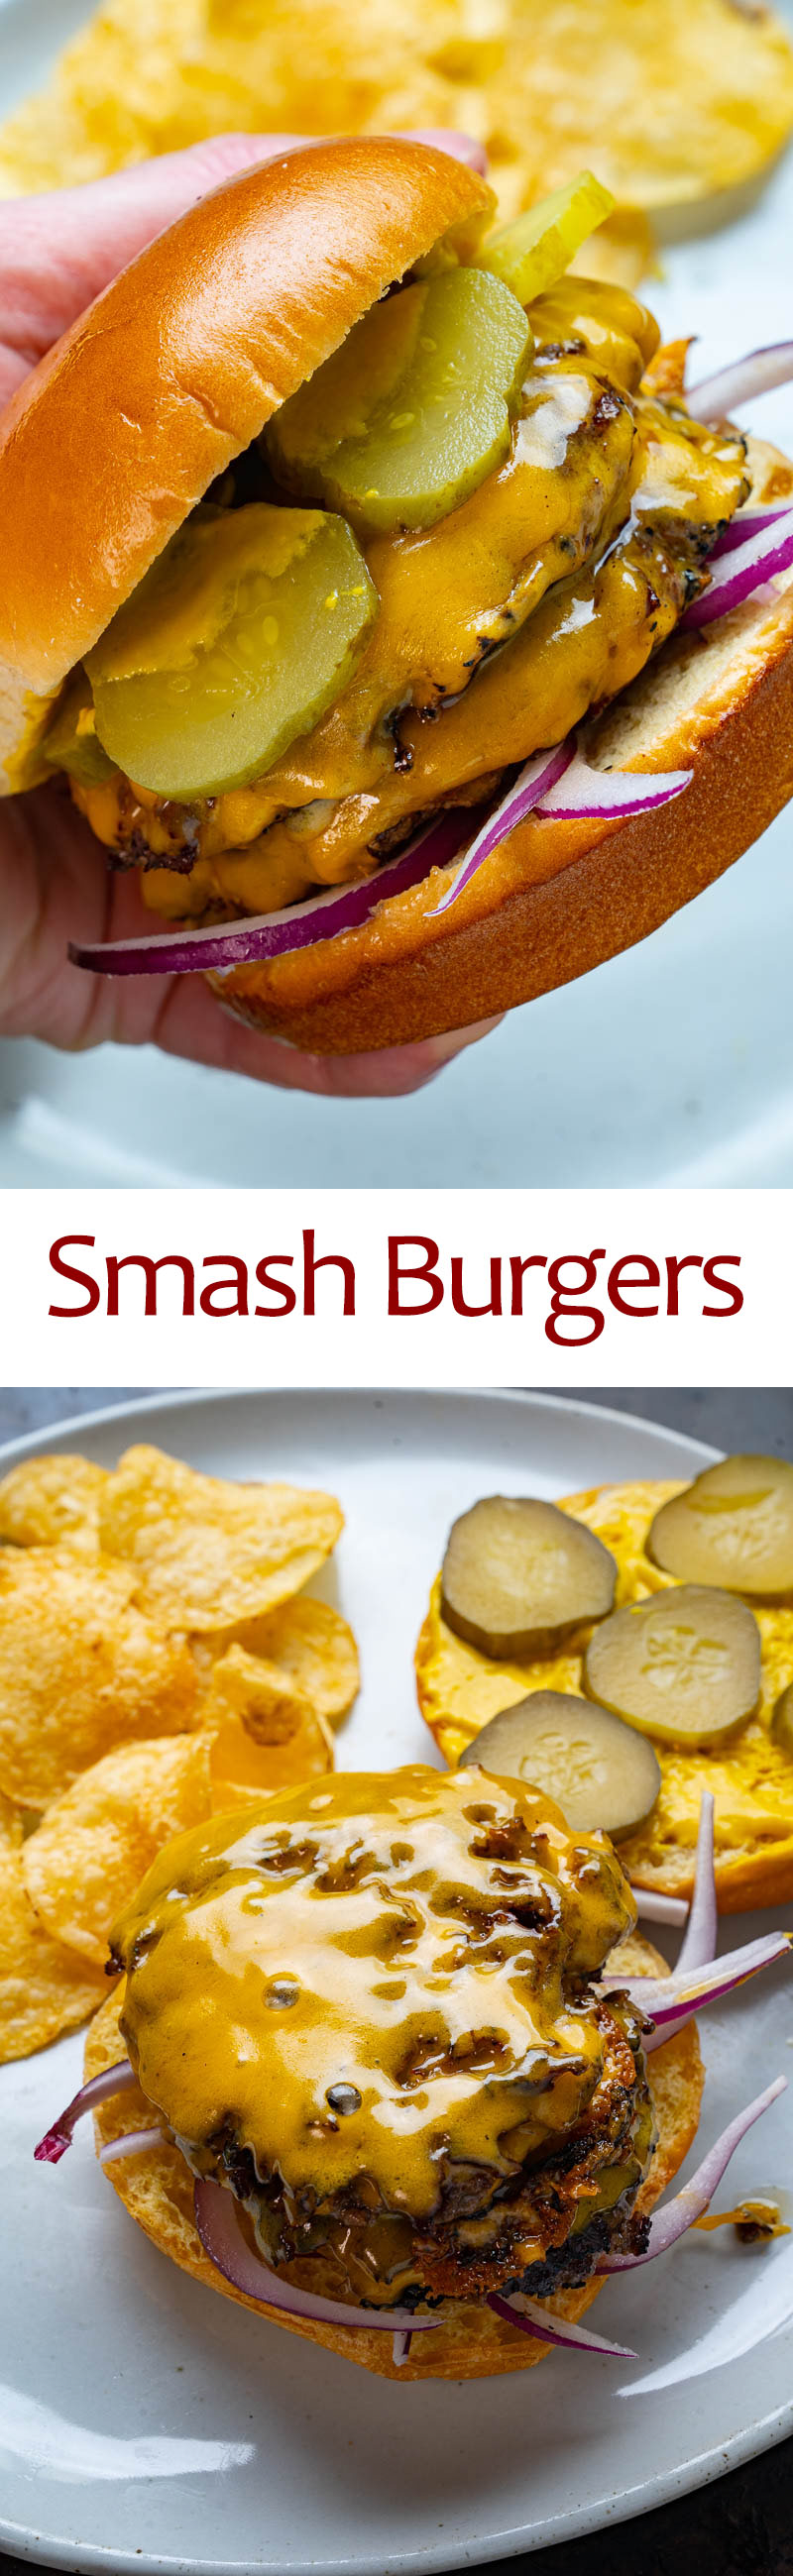 Smash Burgers - Closet Cooking